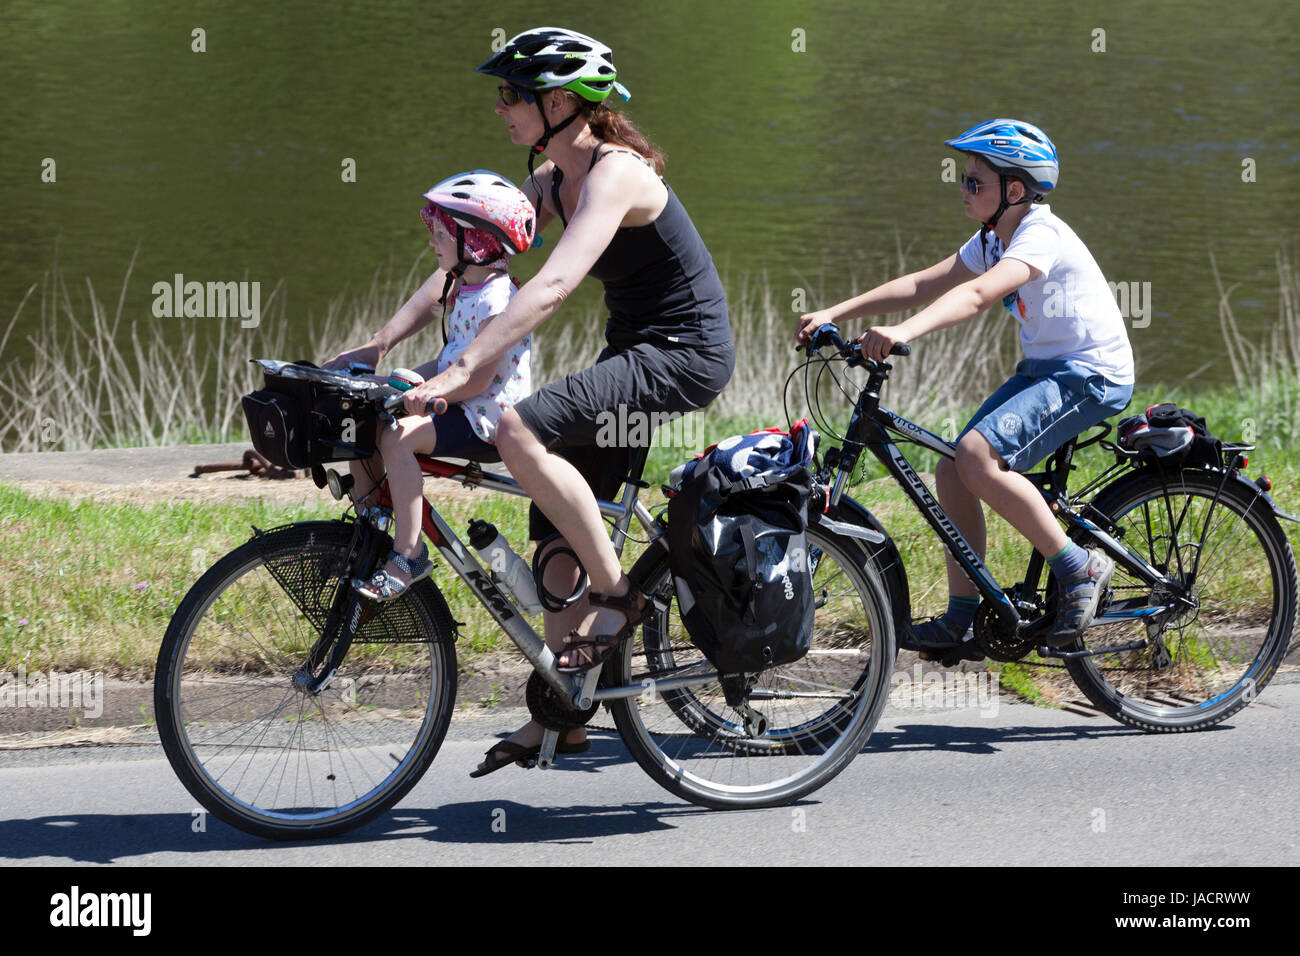 Madre de familia ciclista de Alemania con dos hijos, el niño pequeño sentado en un asiento para niños y todo el mundo tiene cascos Elbe bicicleta de río Ruta Bike trail Niño Foto de stock